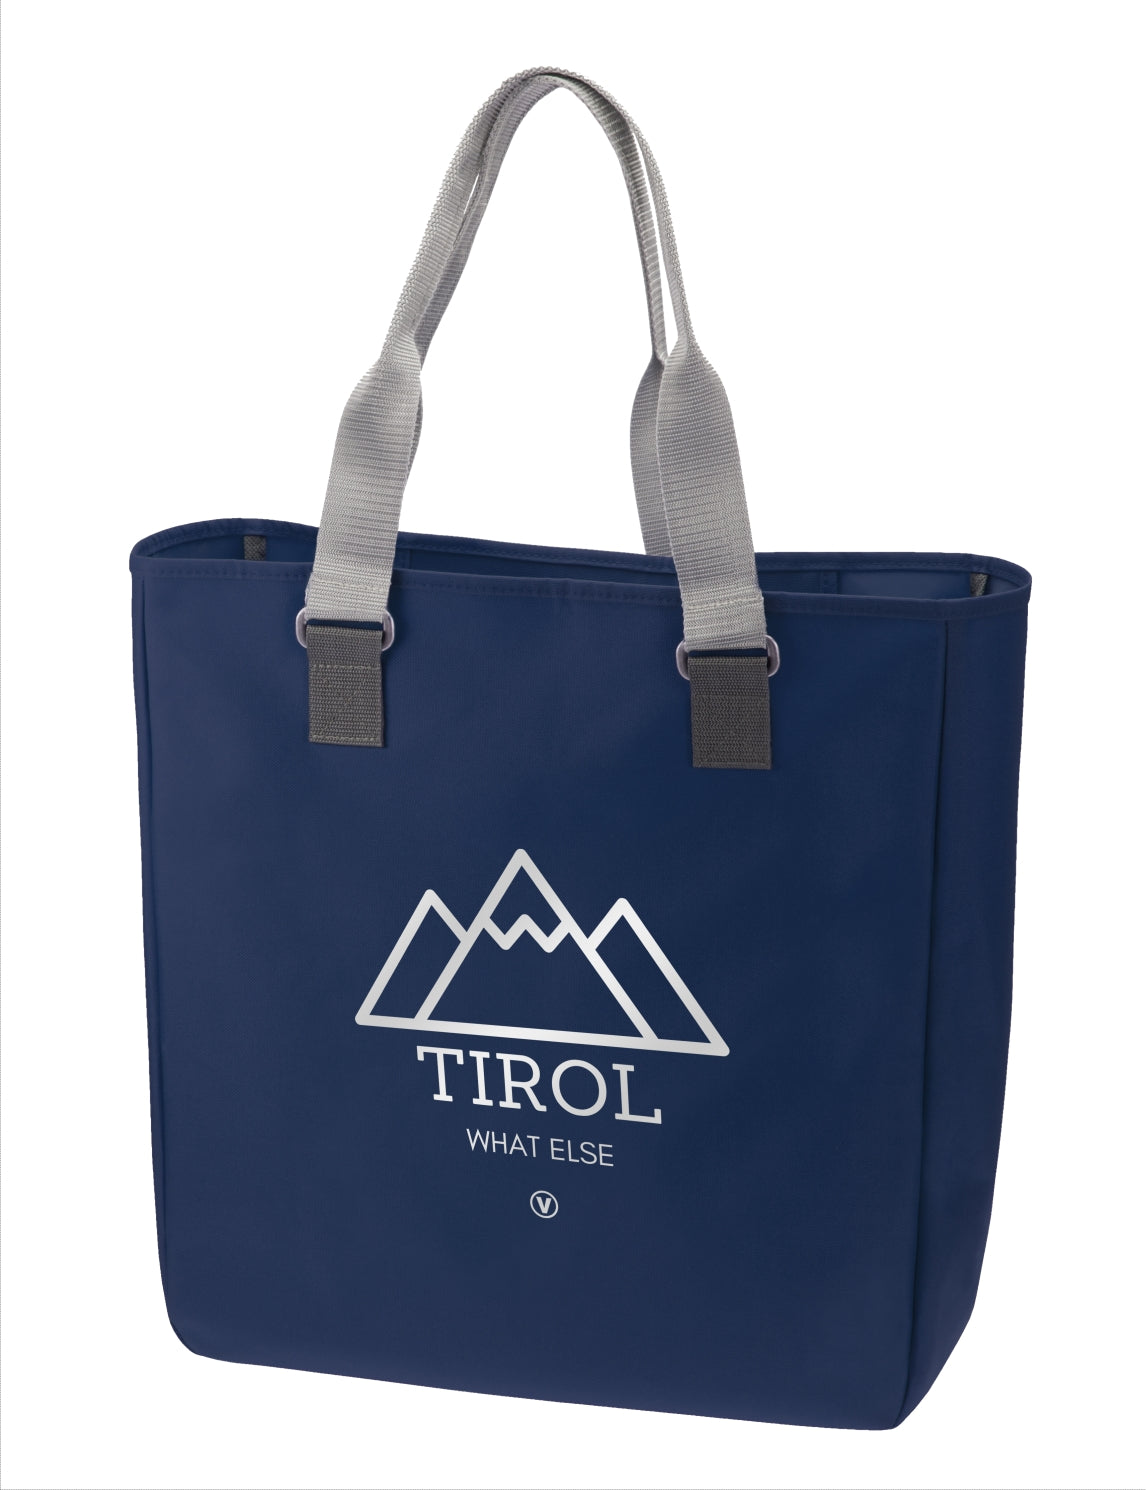 Tirol - What Else Tirol - What Else